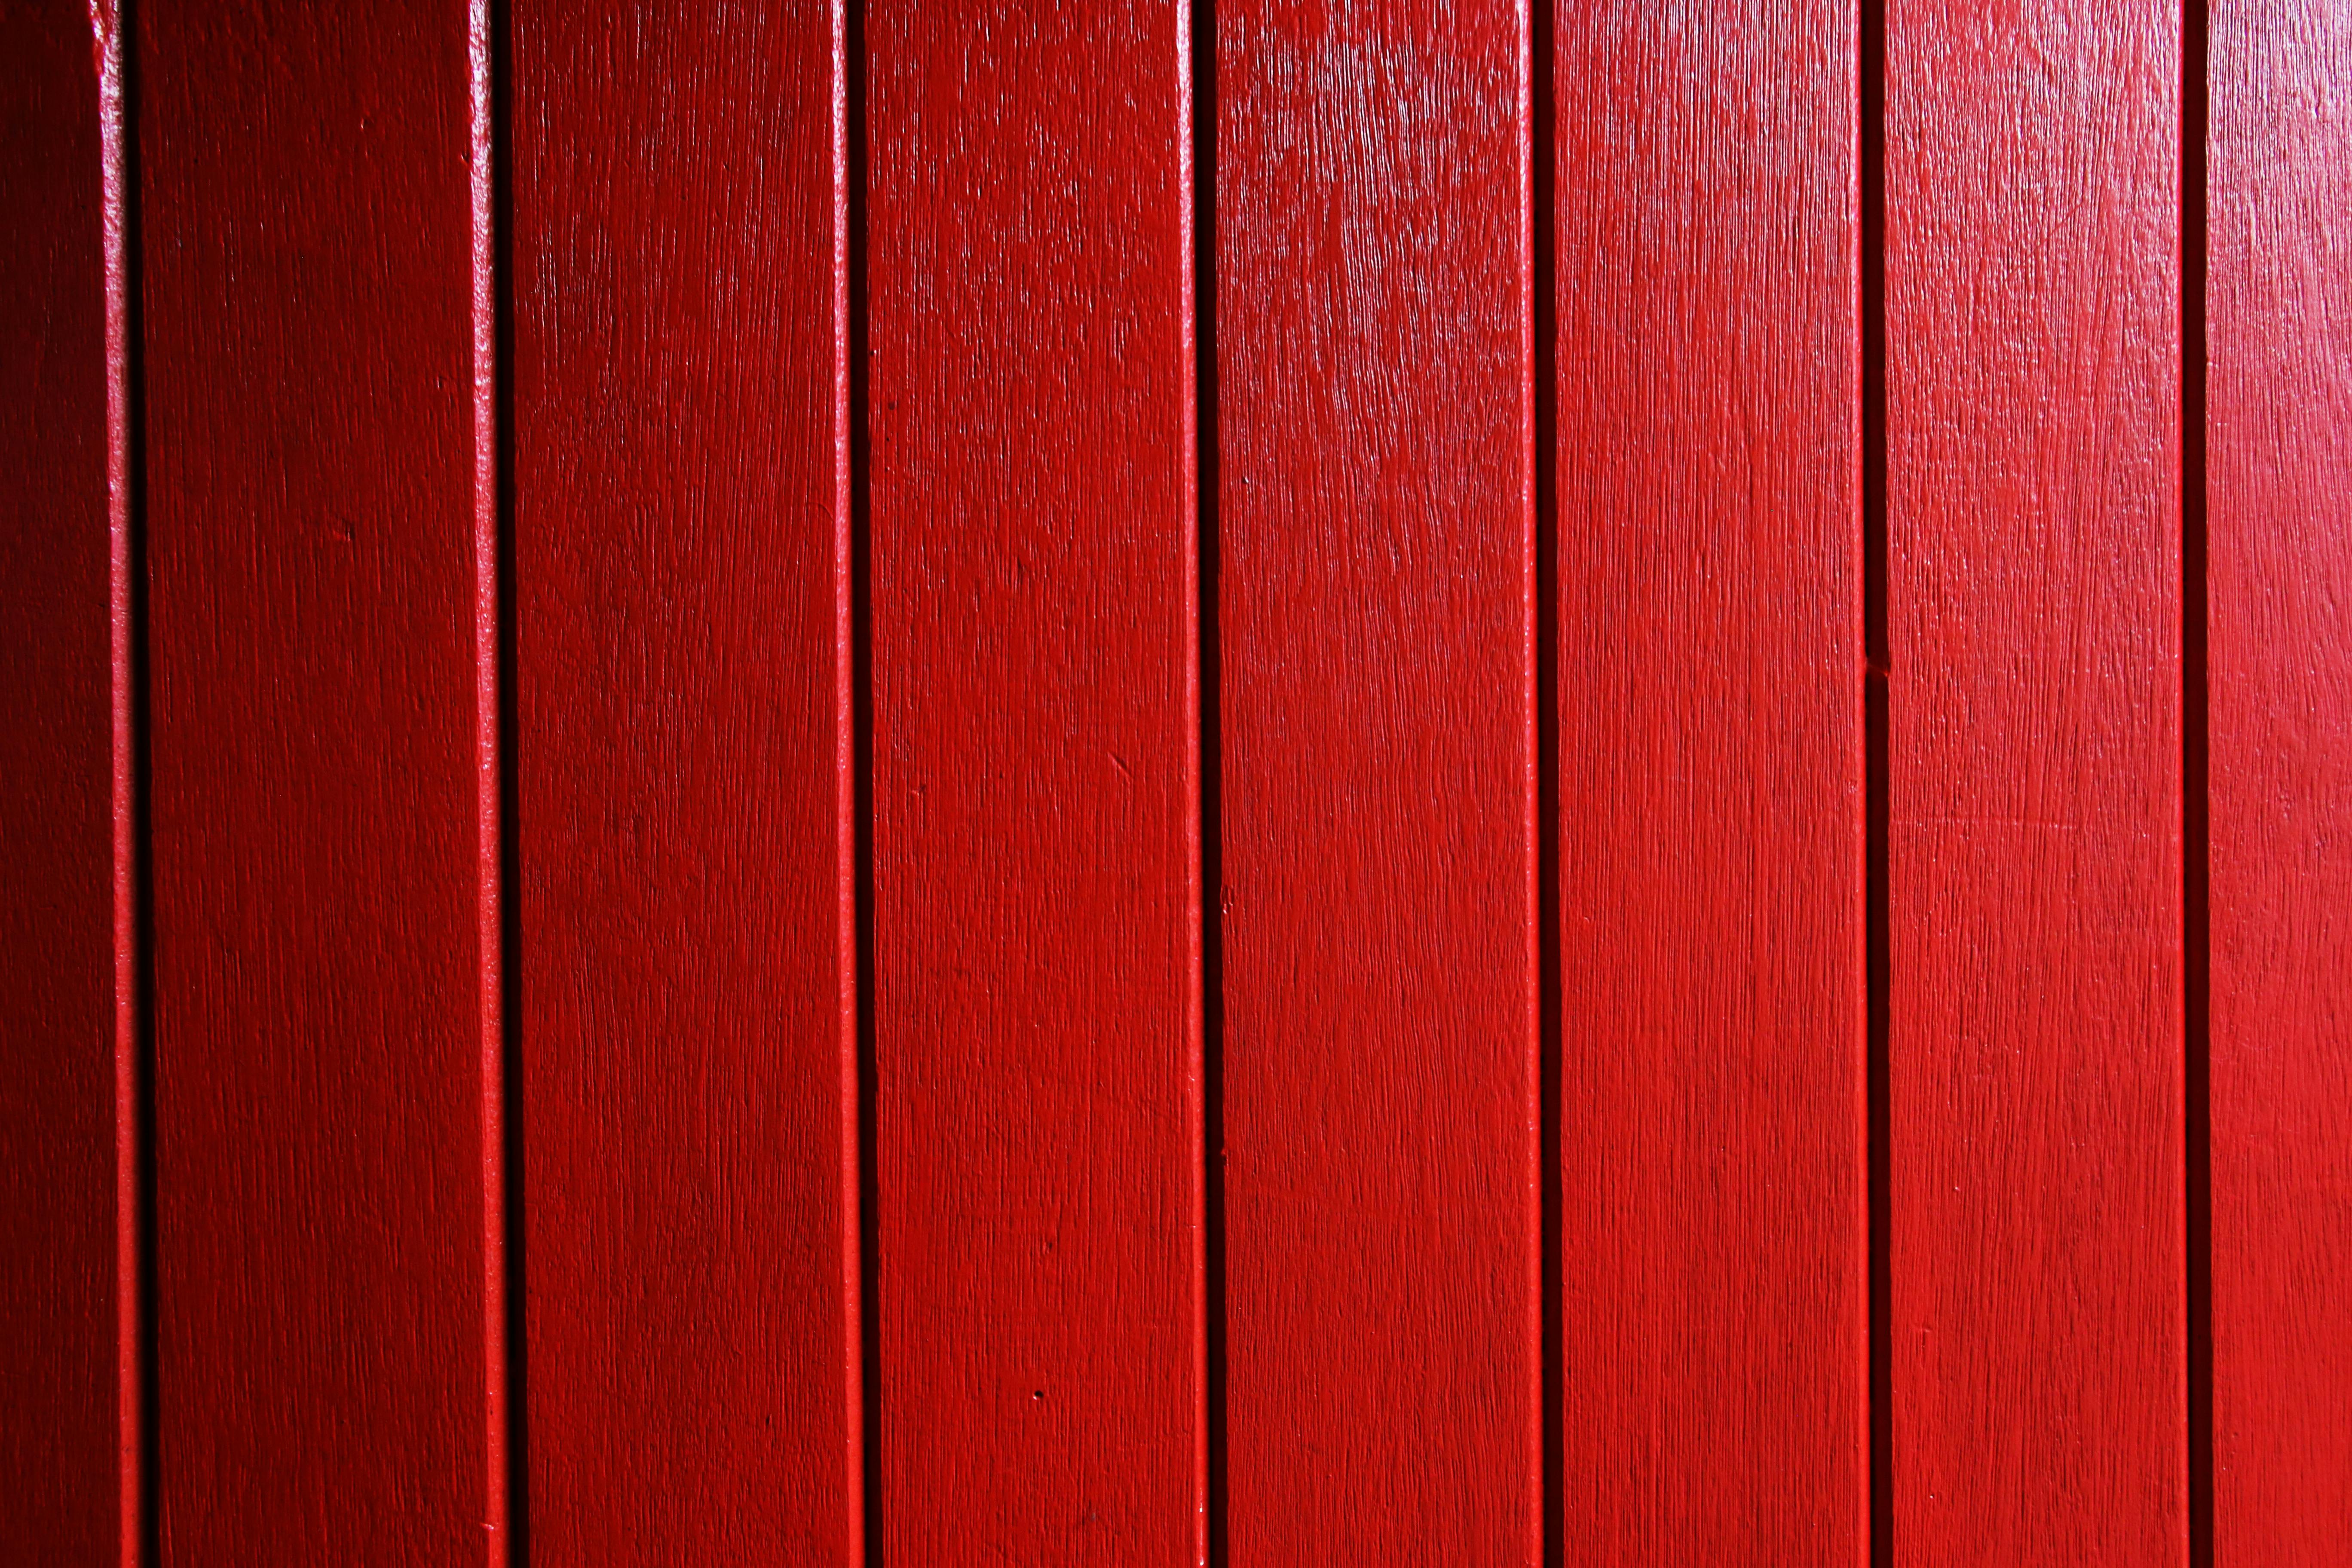 Bề mặt gỗ đỏ kết hợp cùng đường vân độc đáo sẽ khiến bạn không thể chê vào đâu được. Với độ bóng và chắc chắn của bề mặt gỗ, bạn có thể yên tâm sử dụng sản phẩm này trong thời gian dài mà không phải lo lắng về việc bề mặt sẽ bị trầy xước hay hư hỏng.